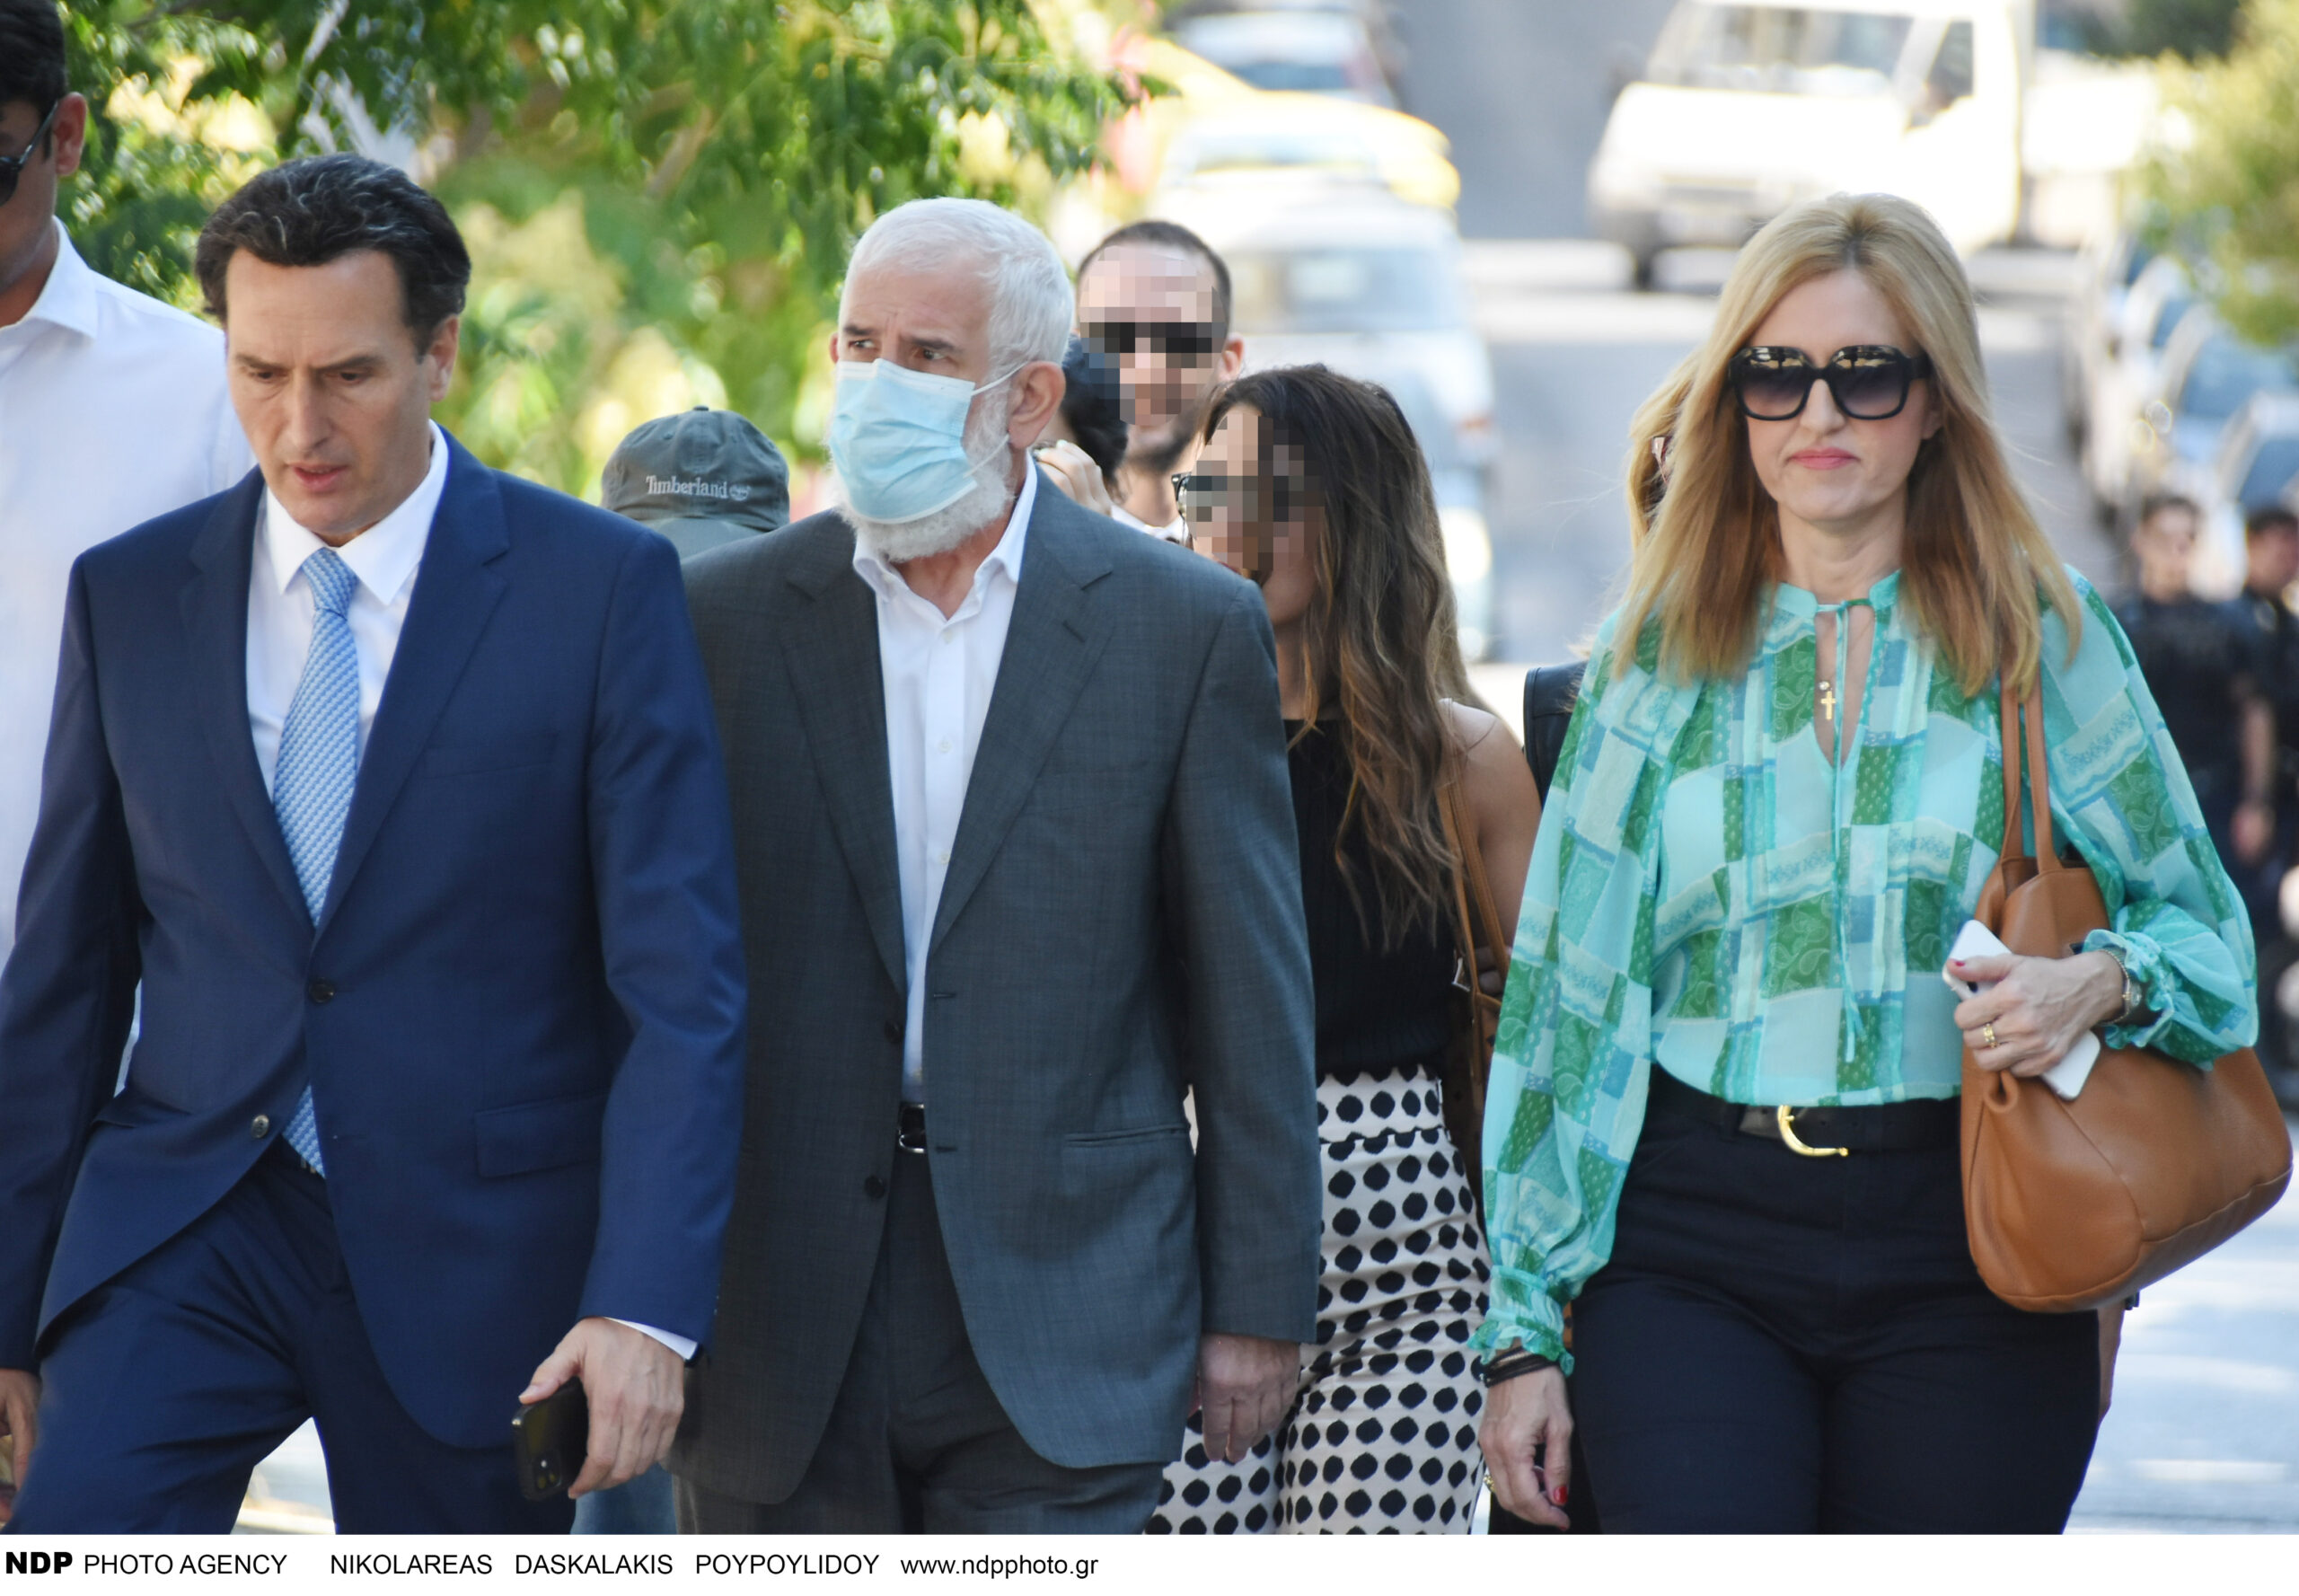 Πέτρος Φιλιππίδης: Έφτασε χωρίς χειροπέδες στο δικαστήριο (ΦΩΤΟ)